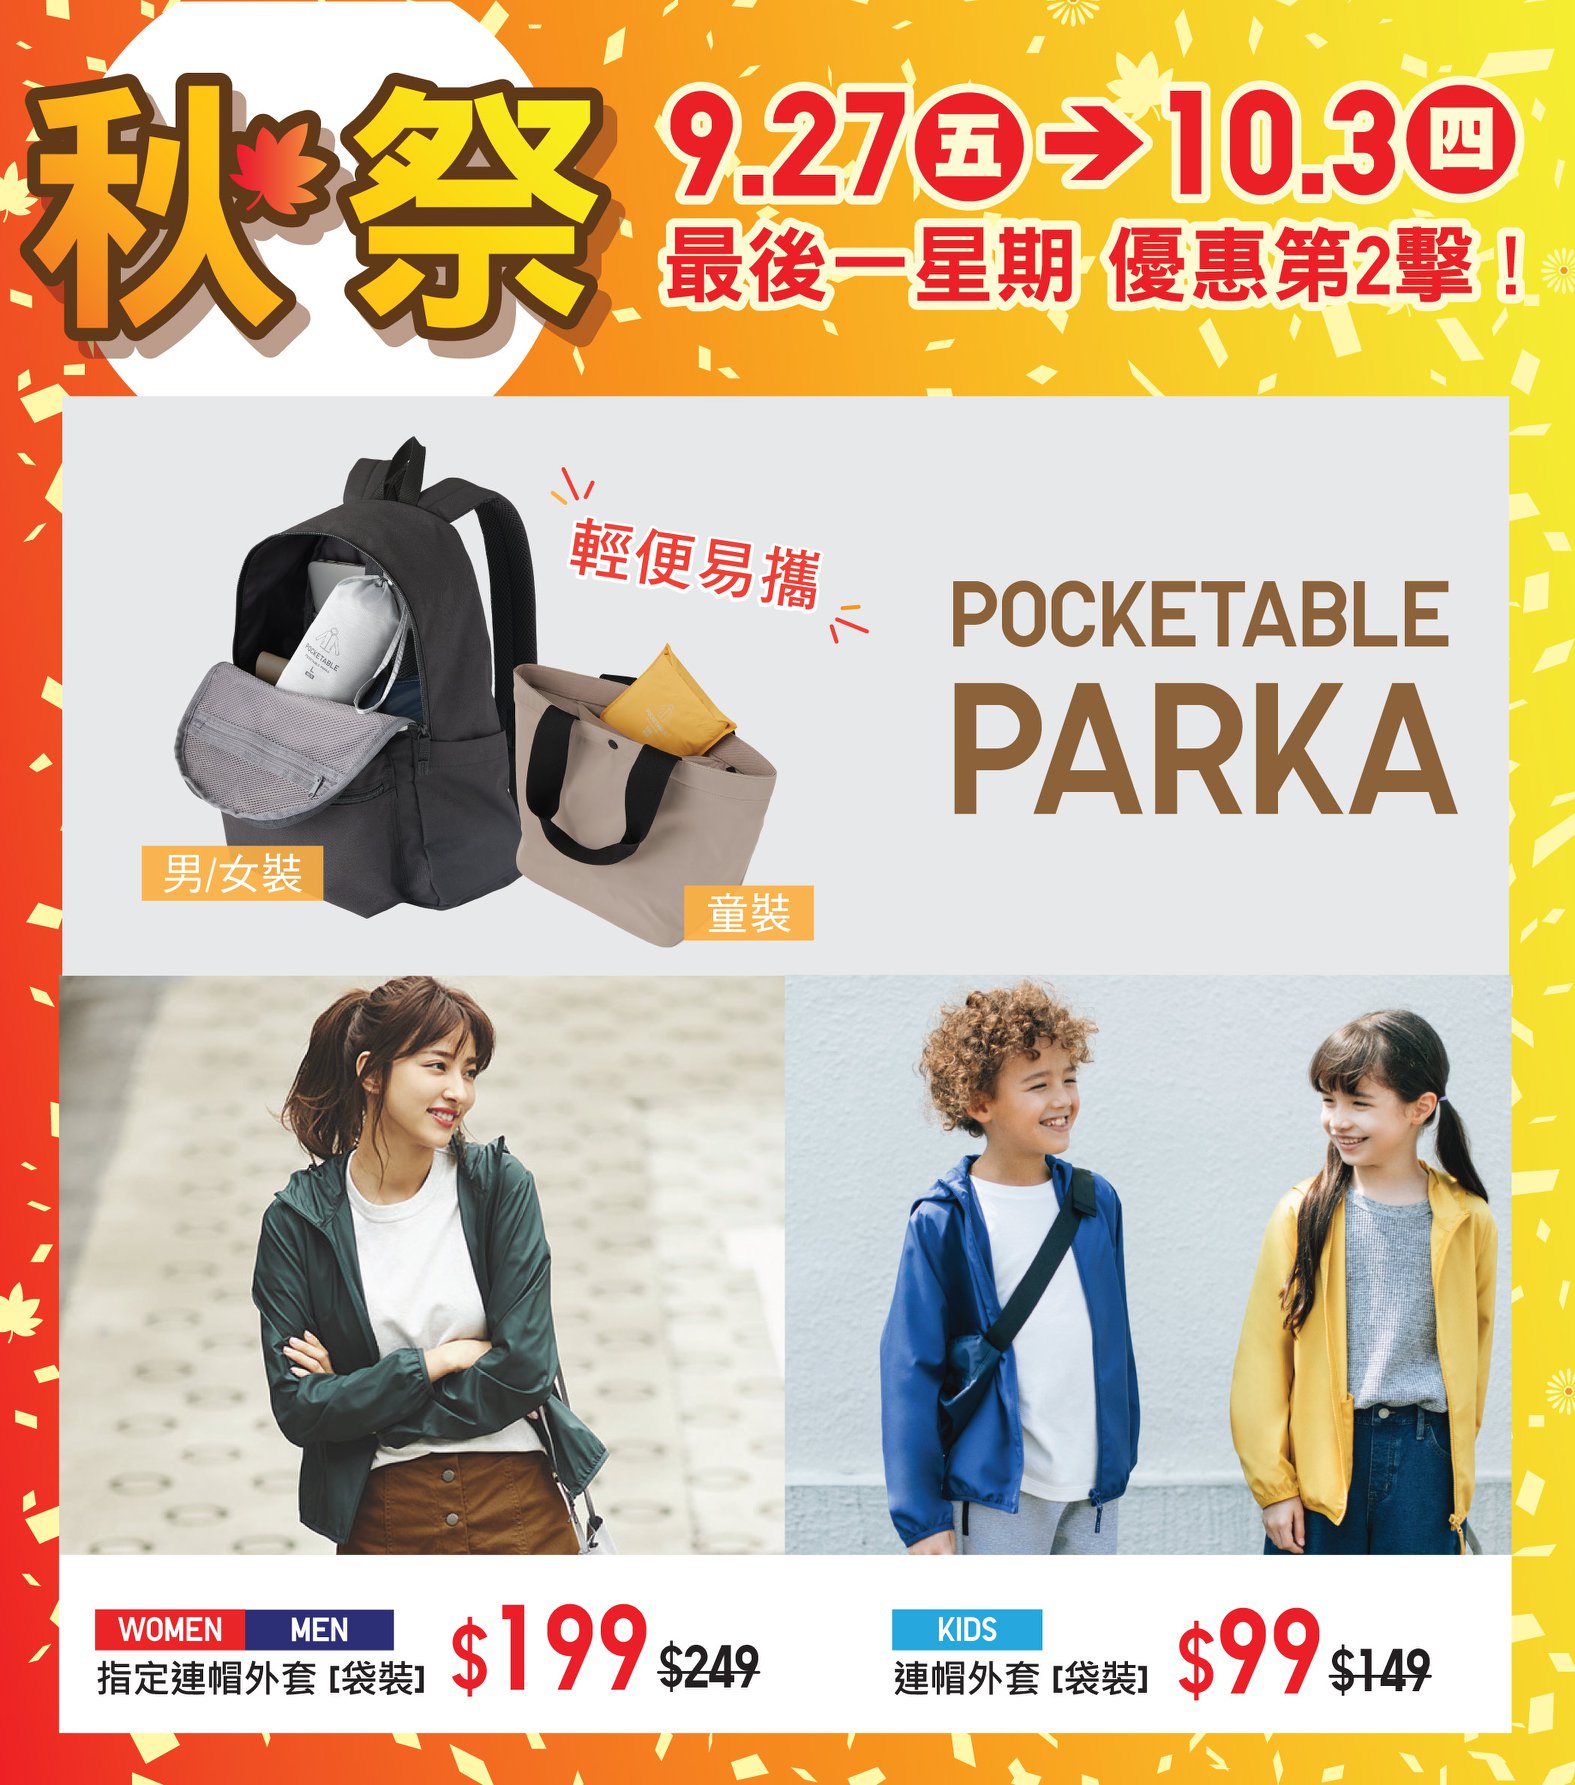 【#秋祭最後一星期!: Pocketable Parka】